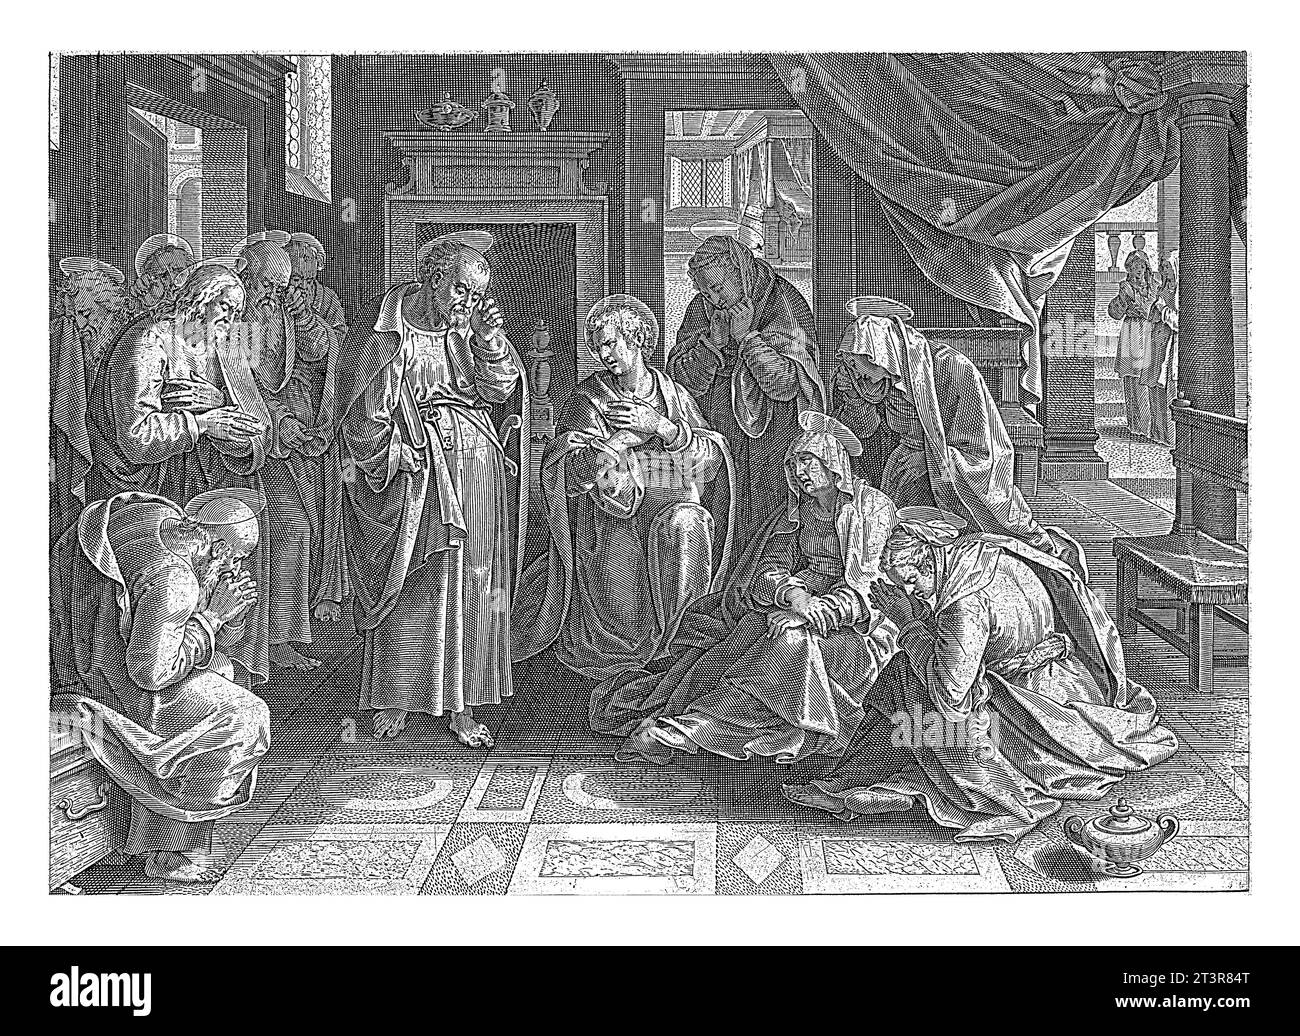 Marie et les apôtres pleurant le Christ, anonyme, d'après Jan van der Straet, 1646 au centre d'un salon sont les apôtres, Marie et plusieurs wom Banque D'Images